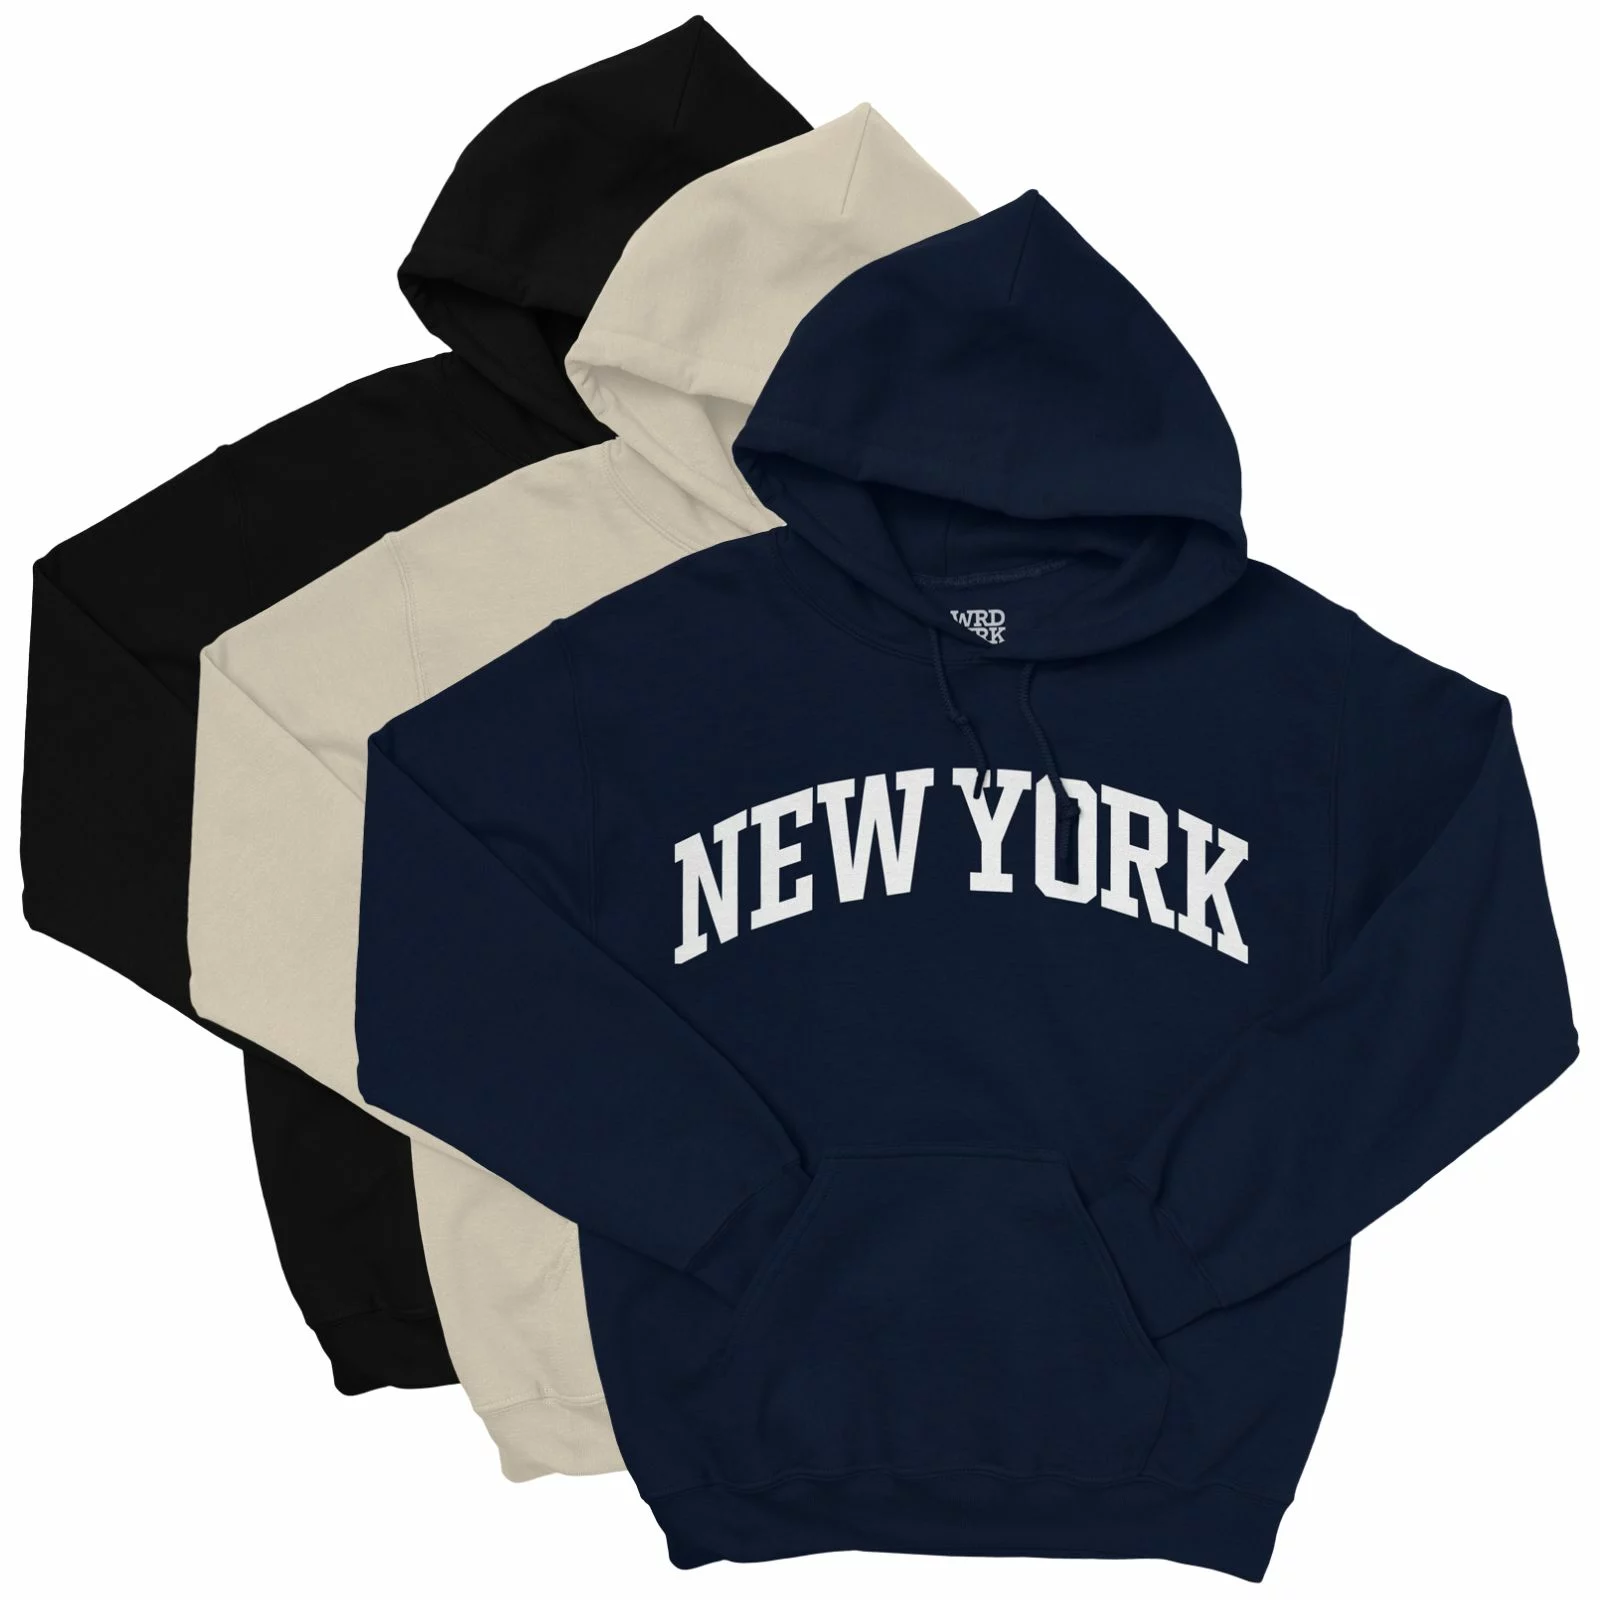 New York Hoodie - College Style Pullover Hooded Sweatshirt - Wrdmrk (Cream, Medium)